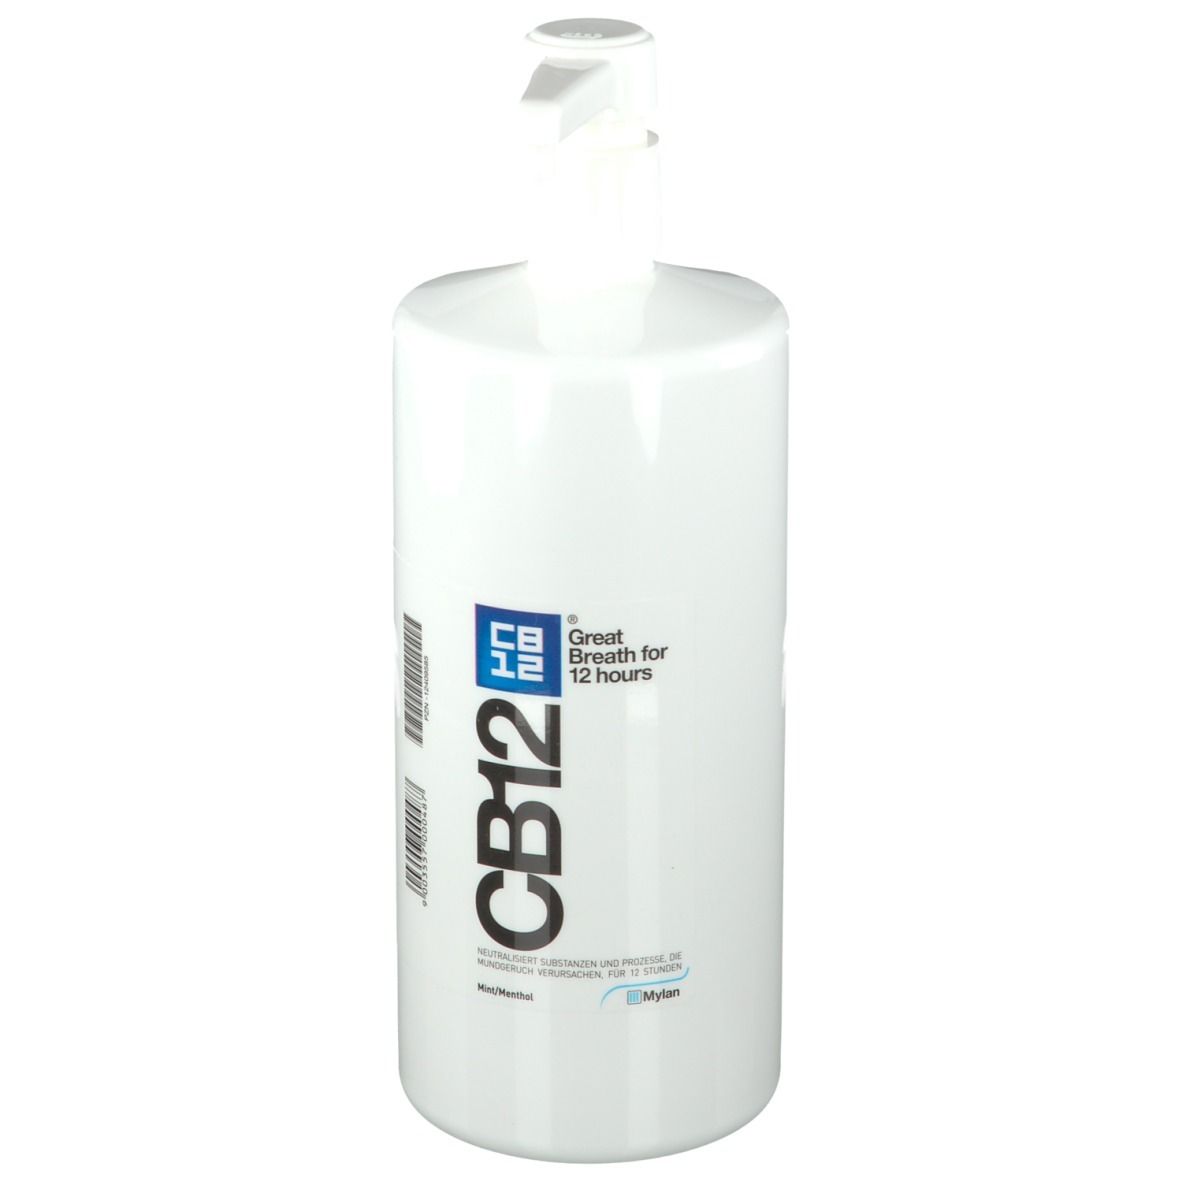 CB12 Mundspülung: Mundwasser mit Zinkacetat & Chlorhexidin gegen schlechten Atem & Mundgeruch